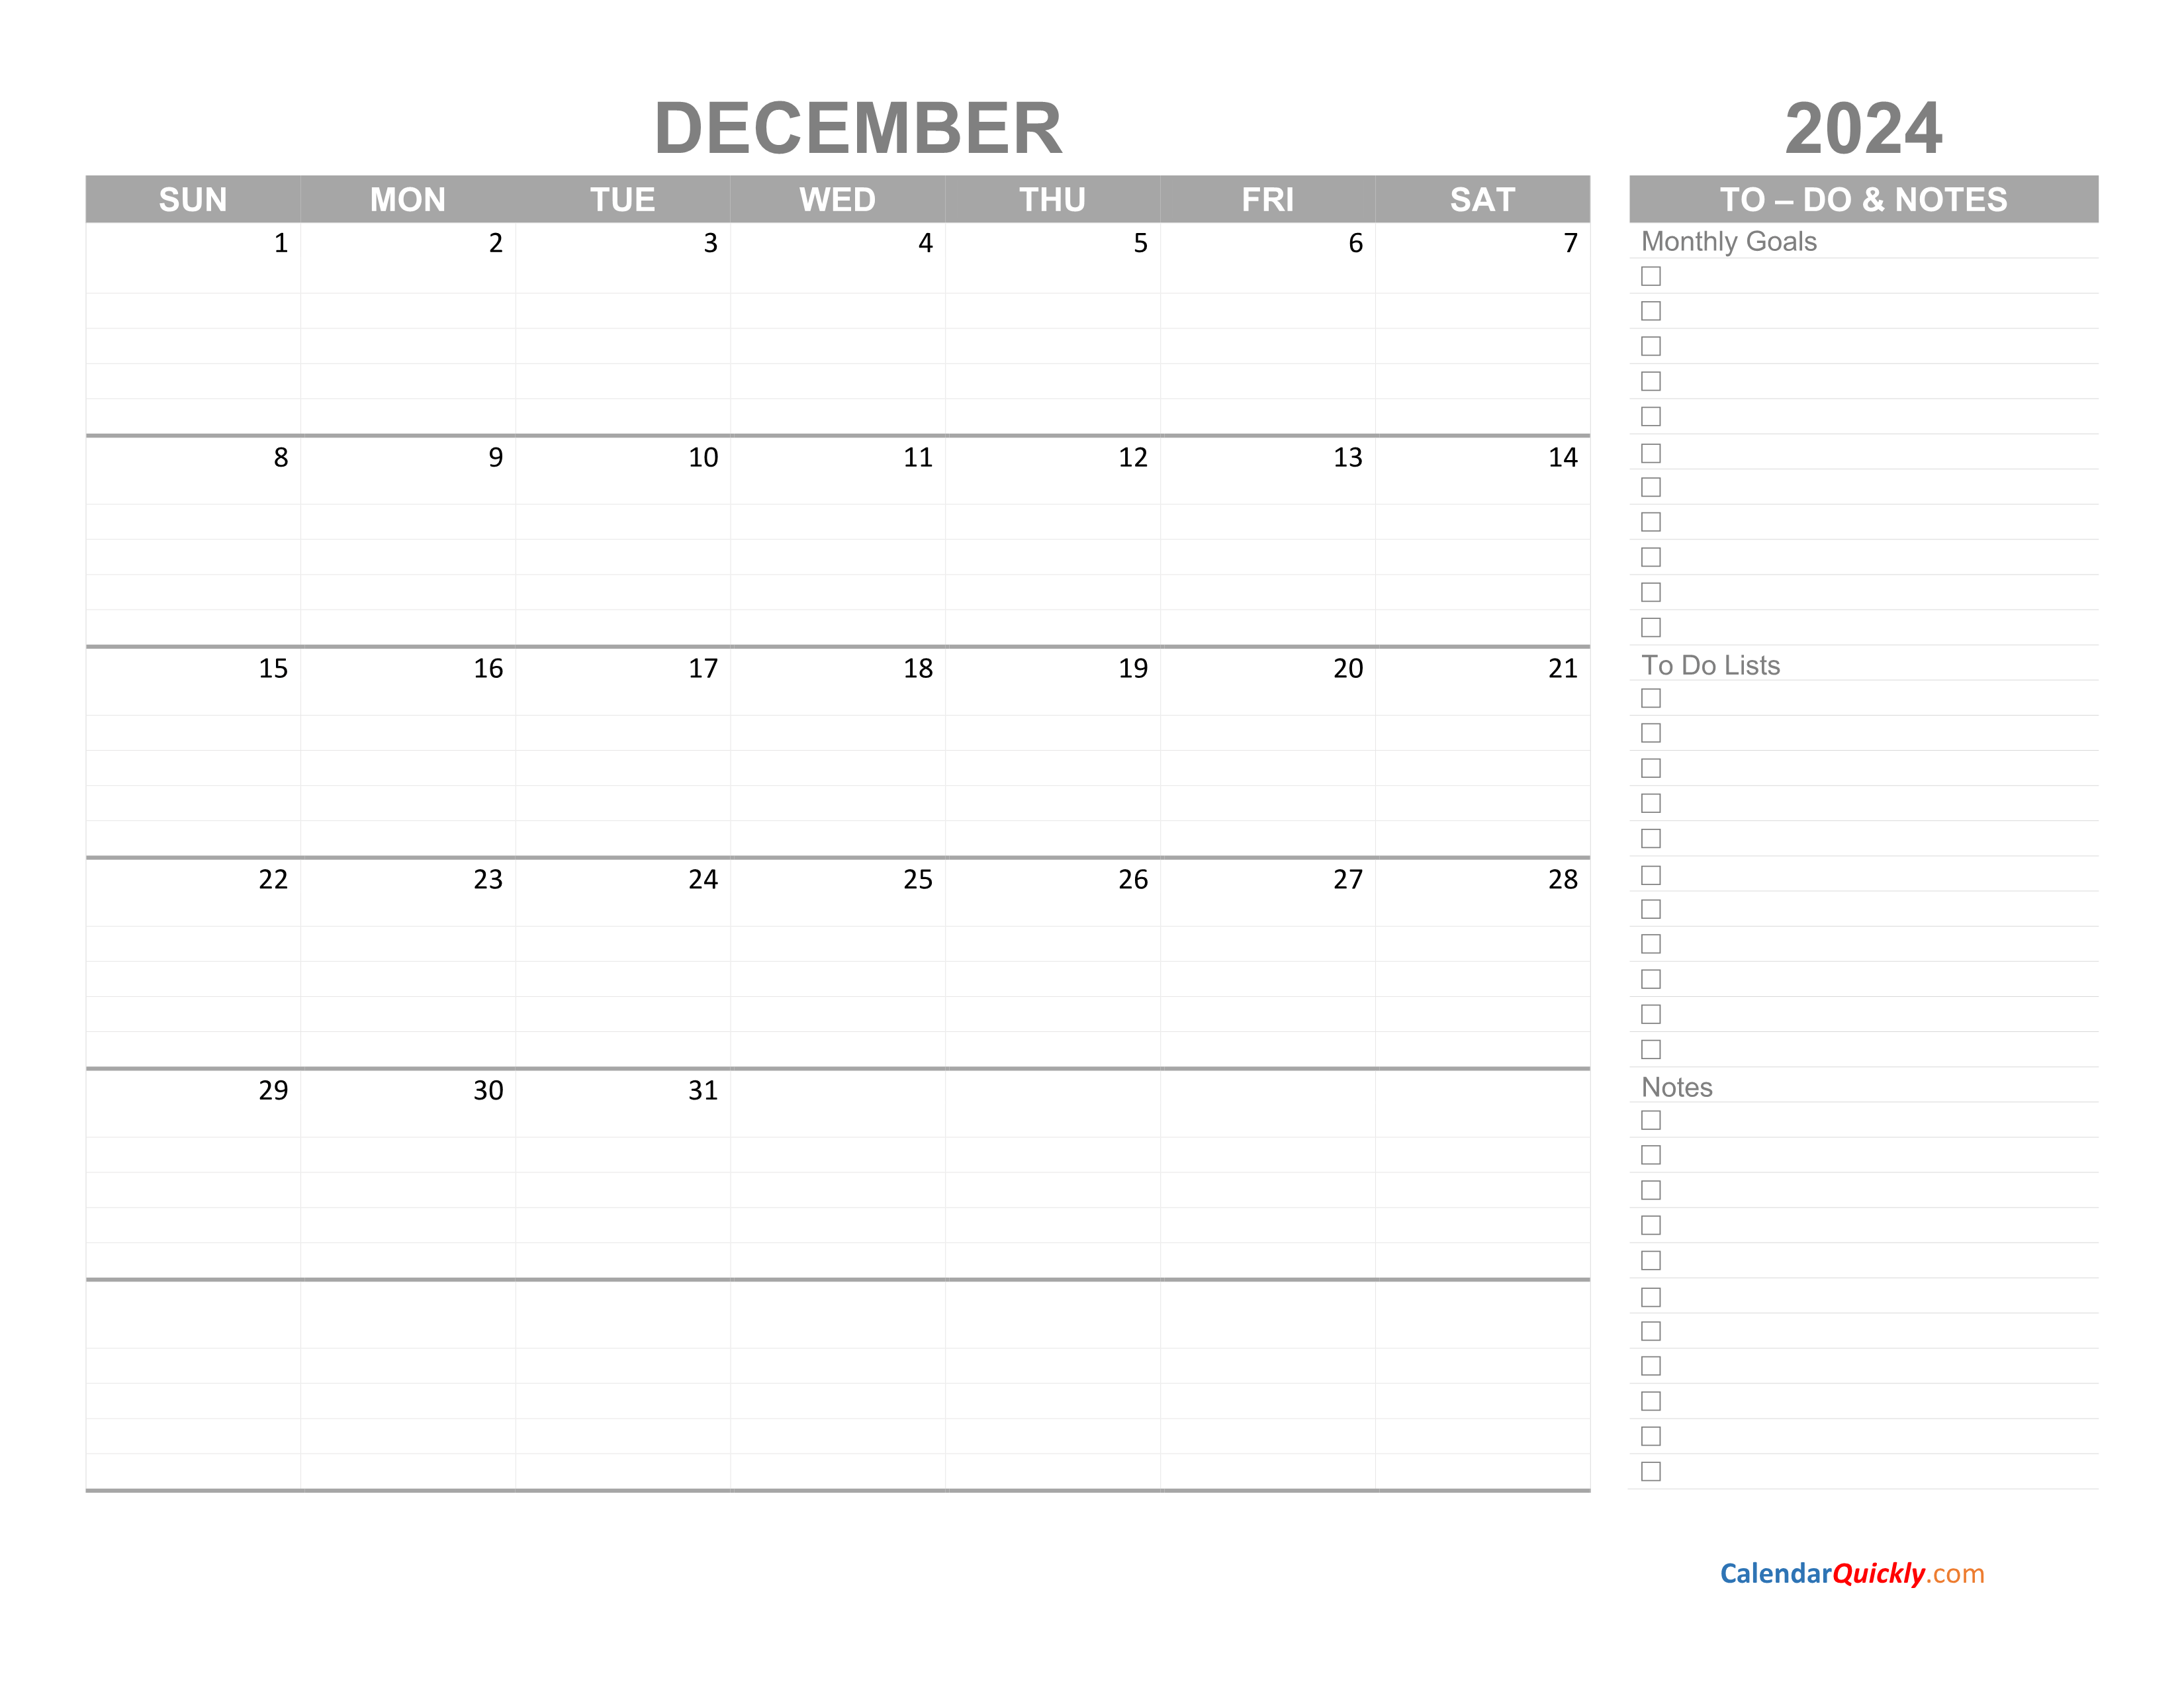 december-2024-calendar-with-to-do-list-calendar-quickly